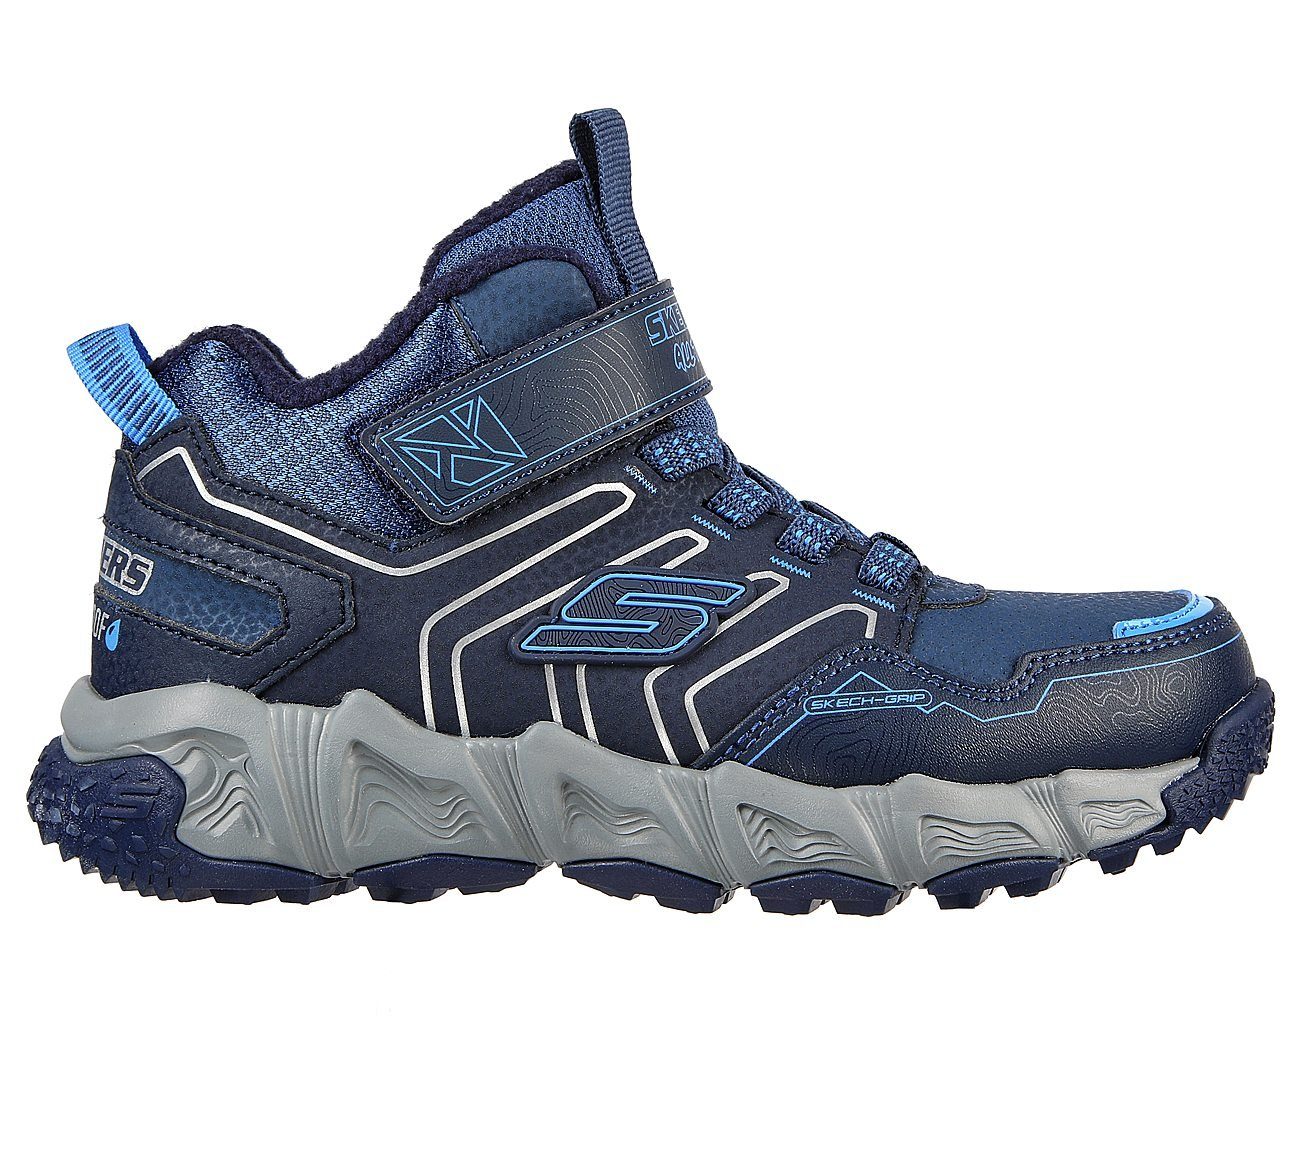 Sneaker navy/blue Skechers Combex